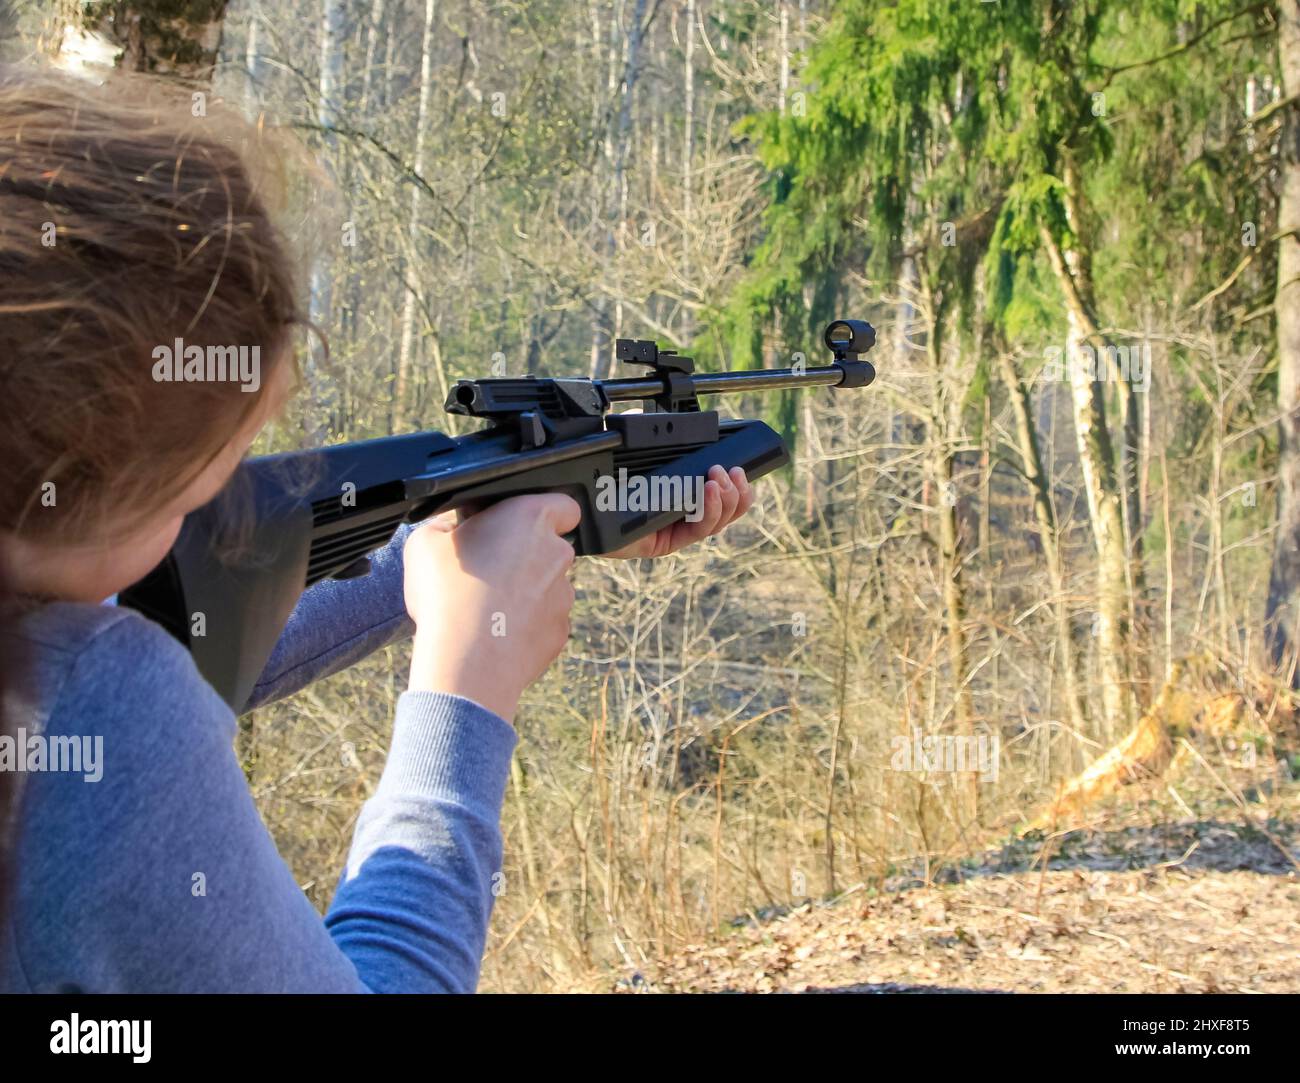 La ragazza spara da un fucile d'aria a un bersaglio nella foresta. Foto Stock